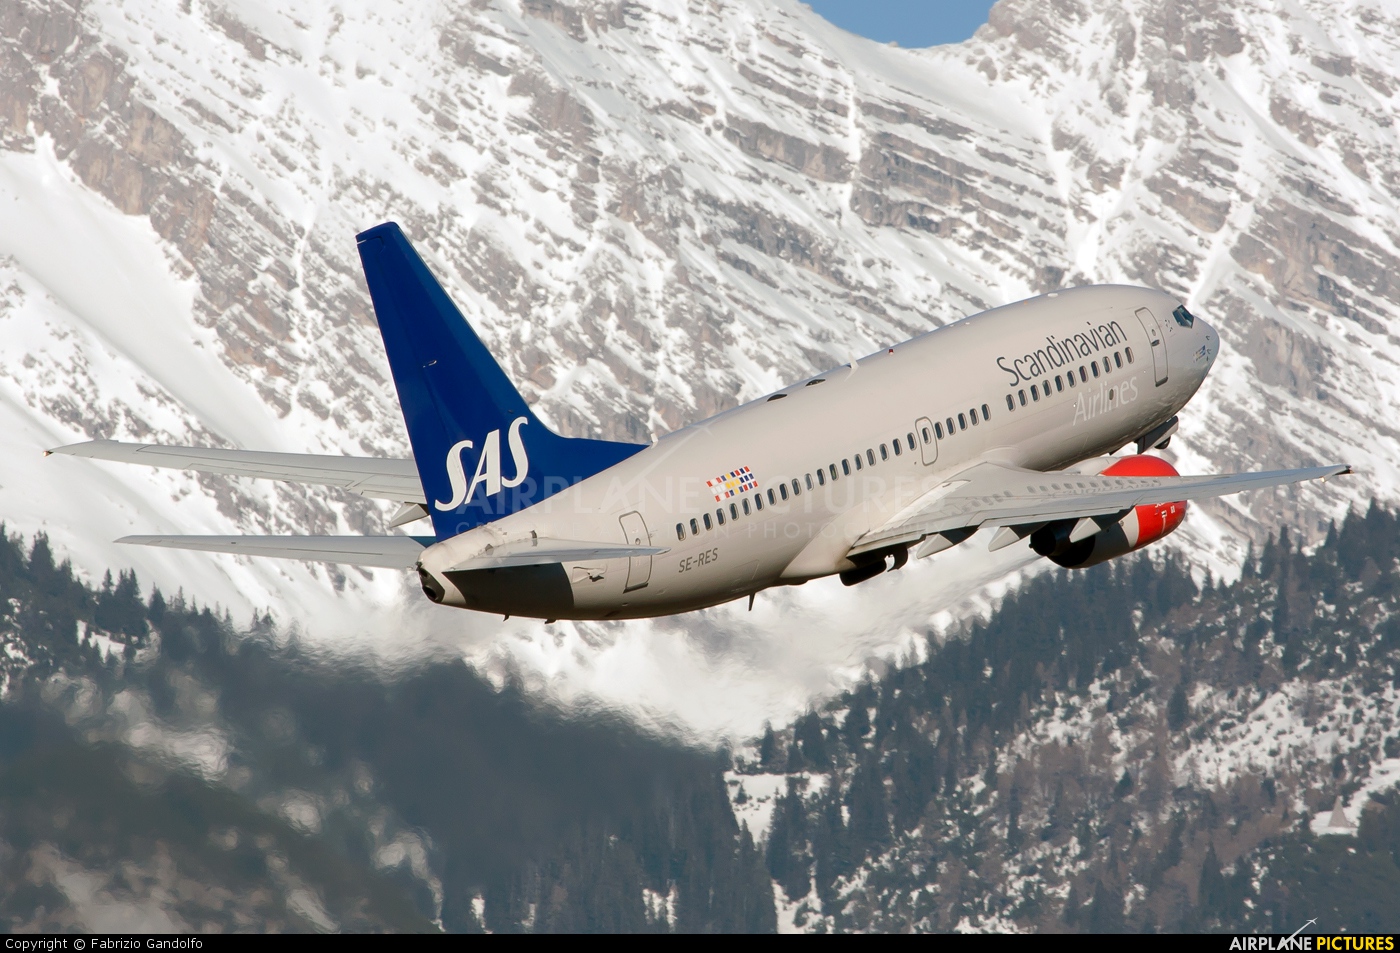 SAS - Scandinavian Airlines SE-RES aircraft at Innsbruck